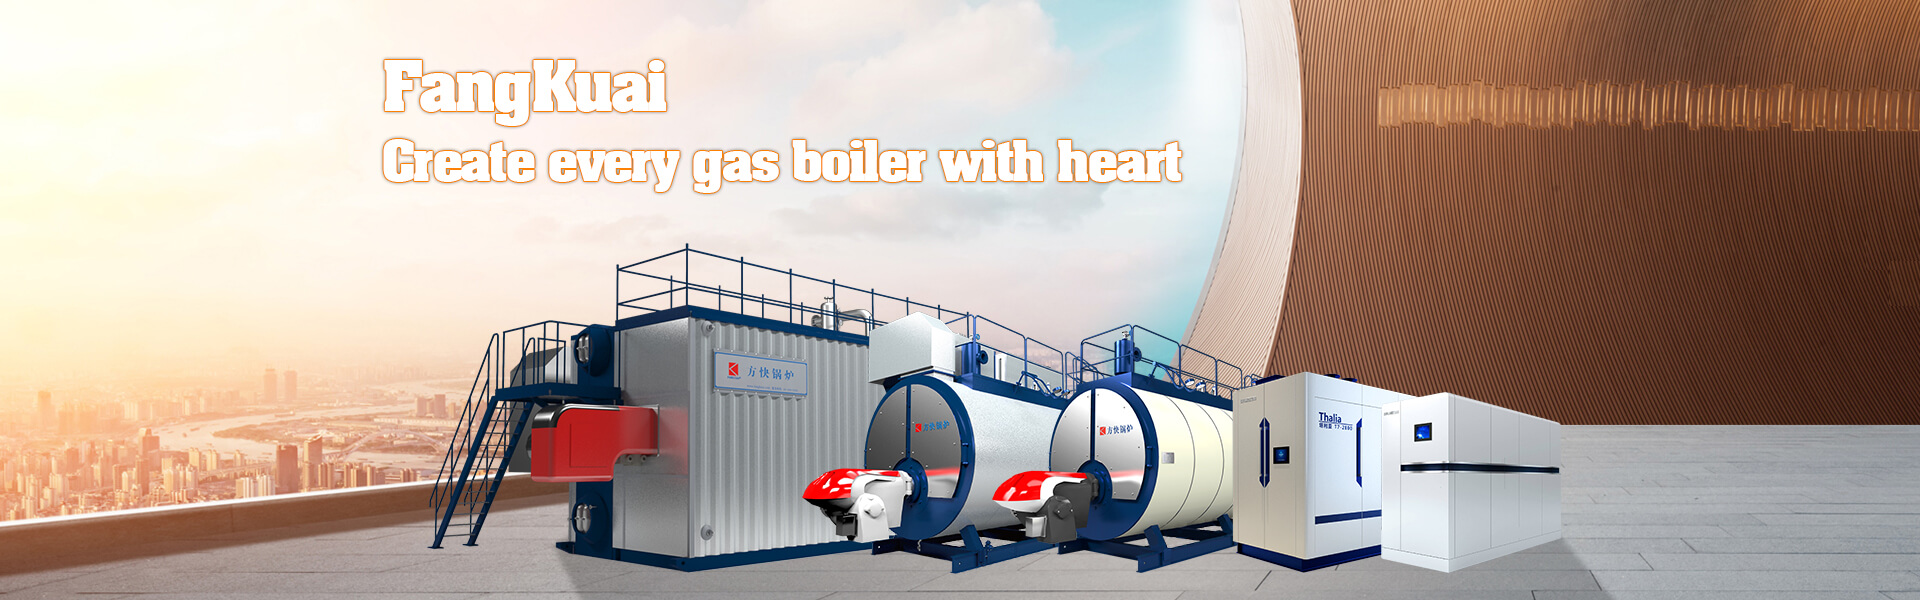 gas(oil) fired boiler